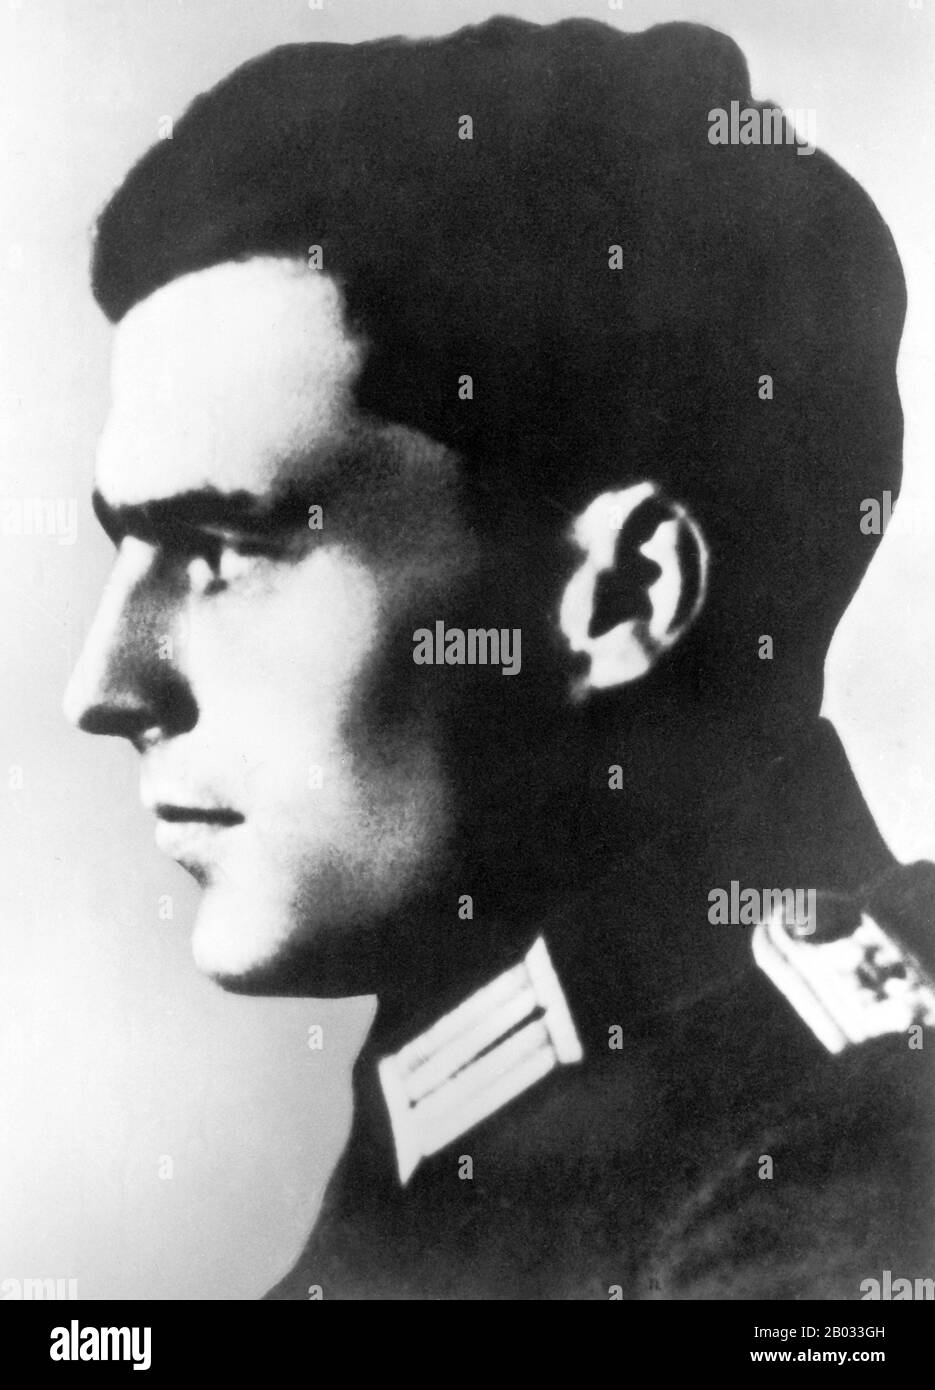 Claus Philipp Maria Schenk Graf von Stauffenberg, allgemein bekannt als Claus Schenk Graf von Stauffenberg (15. November 1907 - 21. Juli 1944), War ein deutscher Armeeoffizier und Mitglied des deutschen Traditionsadels, der zu den führenden Mitgliedern des gescheiterten 20. Juli 1944-Komplotts gehörte, Adolf Hitler zu ermorden und die Nazi-Partei aus der Macht zu entfernen. Zusammen mit Henning von Tresckow und Hans Oster war er eine der zentralen Persönlichkeiten der deutschen Widerstandsbewegung innerhalb der Wehrmacht. Für seine Beteiligung an der Bewegung wurde er kurz nach dem gescheiterten Versuch, den man als bekannt gab, durch den Beschuss des Kaders hingerichtet Stockfoto